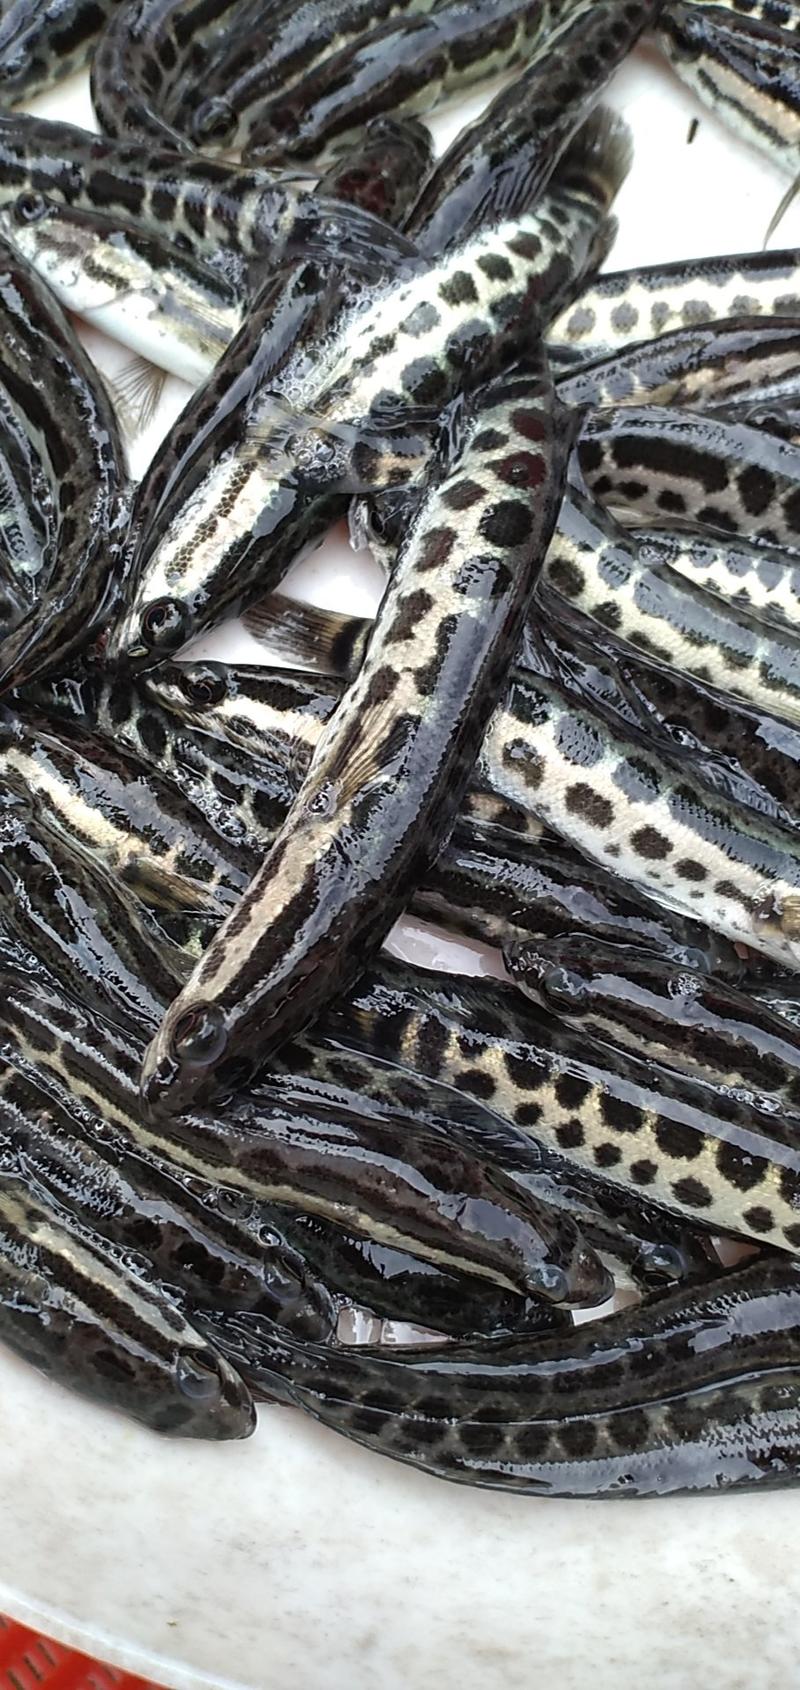 产地直销8-10厘米杂交黑鱼苗大量出售提供养殖技术